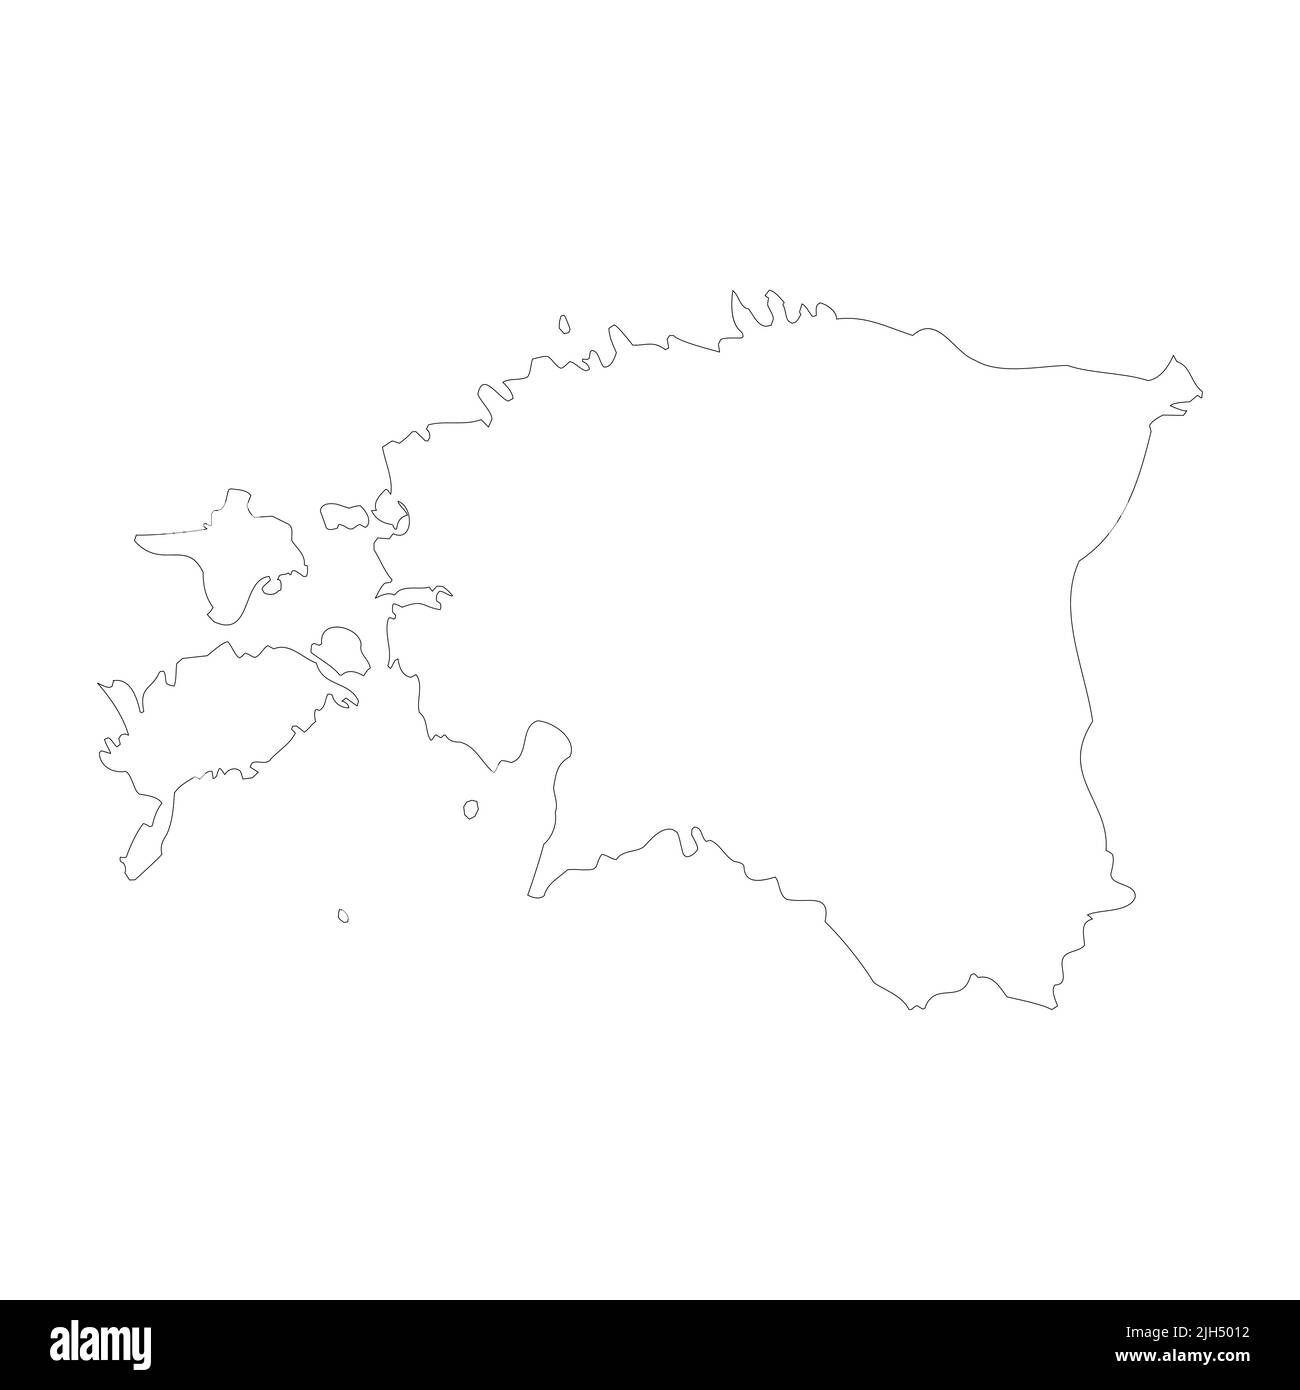 Estonia vector country map outline Stock Vector